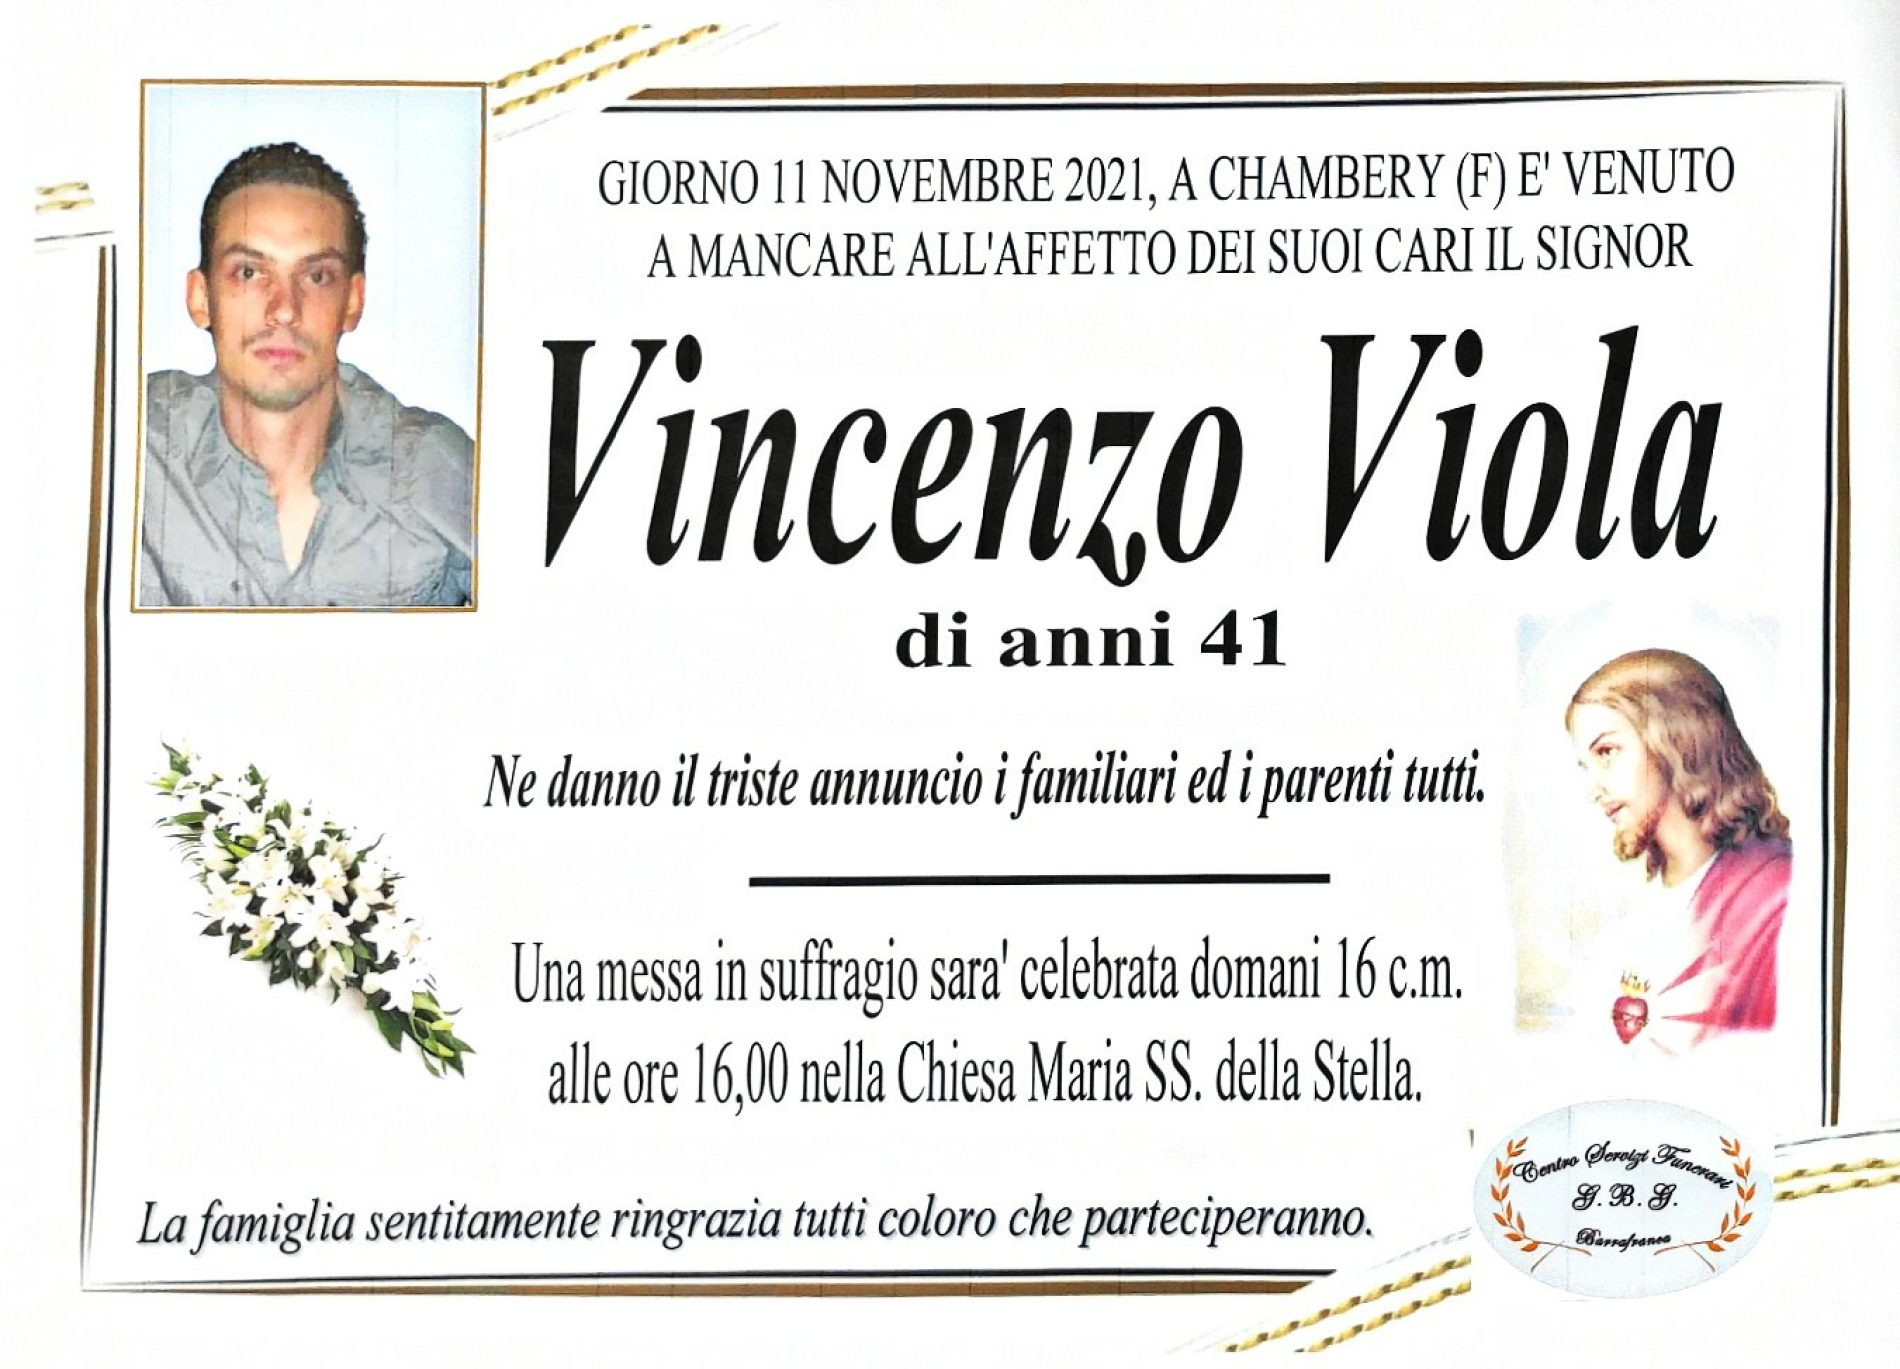 Annuncio servizi funerari agenzia G.B.G. sig. Viola Vincenzo di anni 41